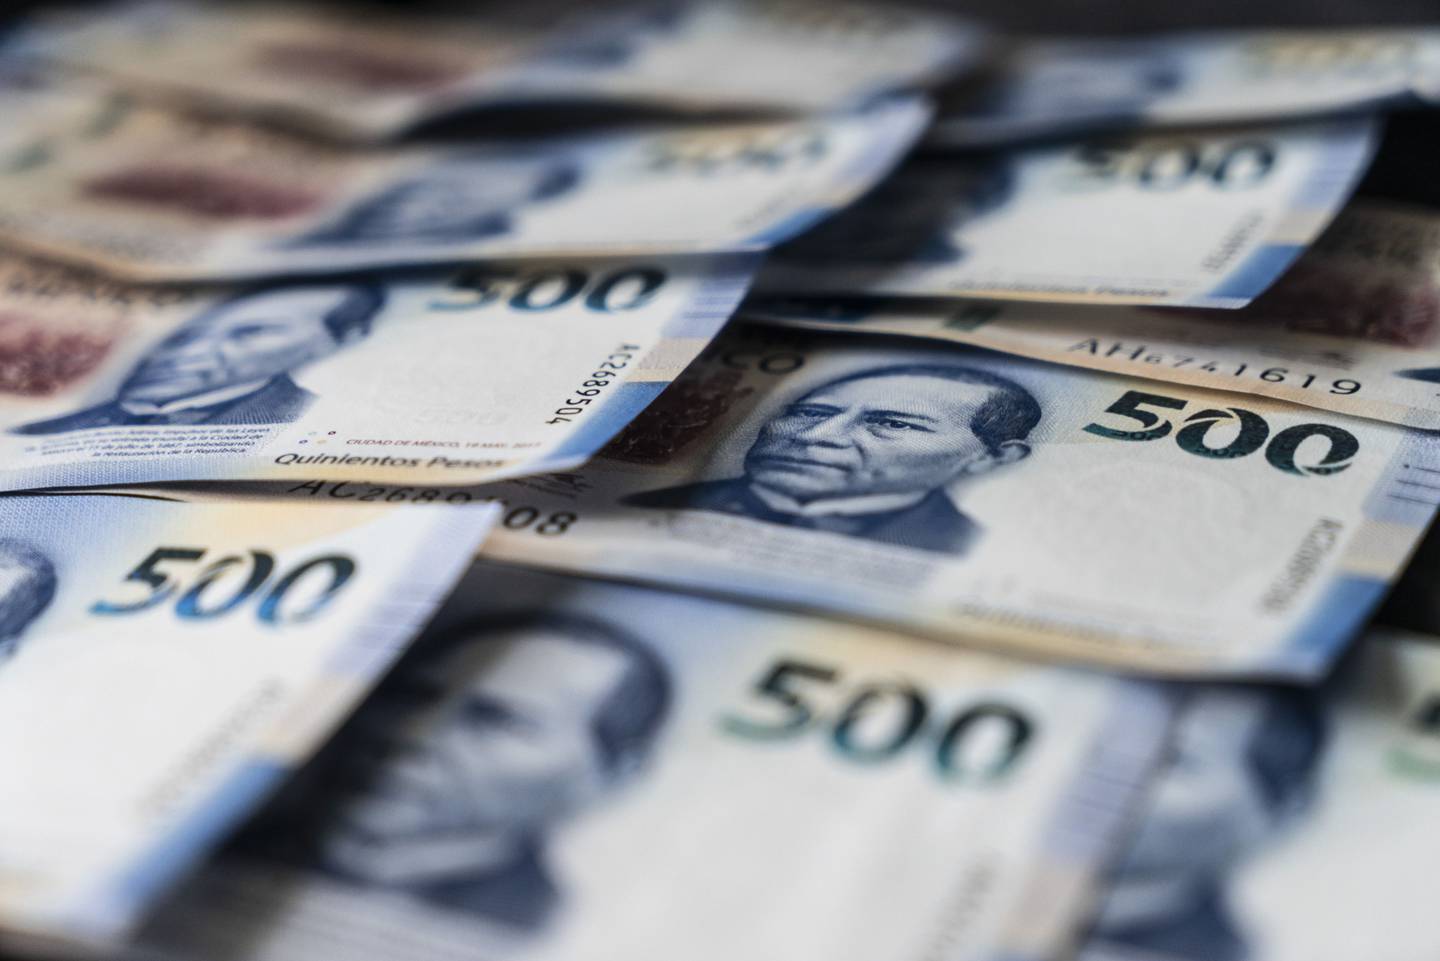 El dólar en México se comercializa en ventanillas bancarias hoy 29 de julio en un promedio de MXN$20,3284 por billete verde, de acuerdo con el portal ElDolarInfo.